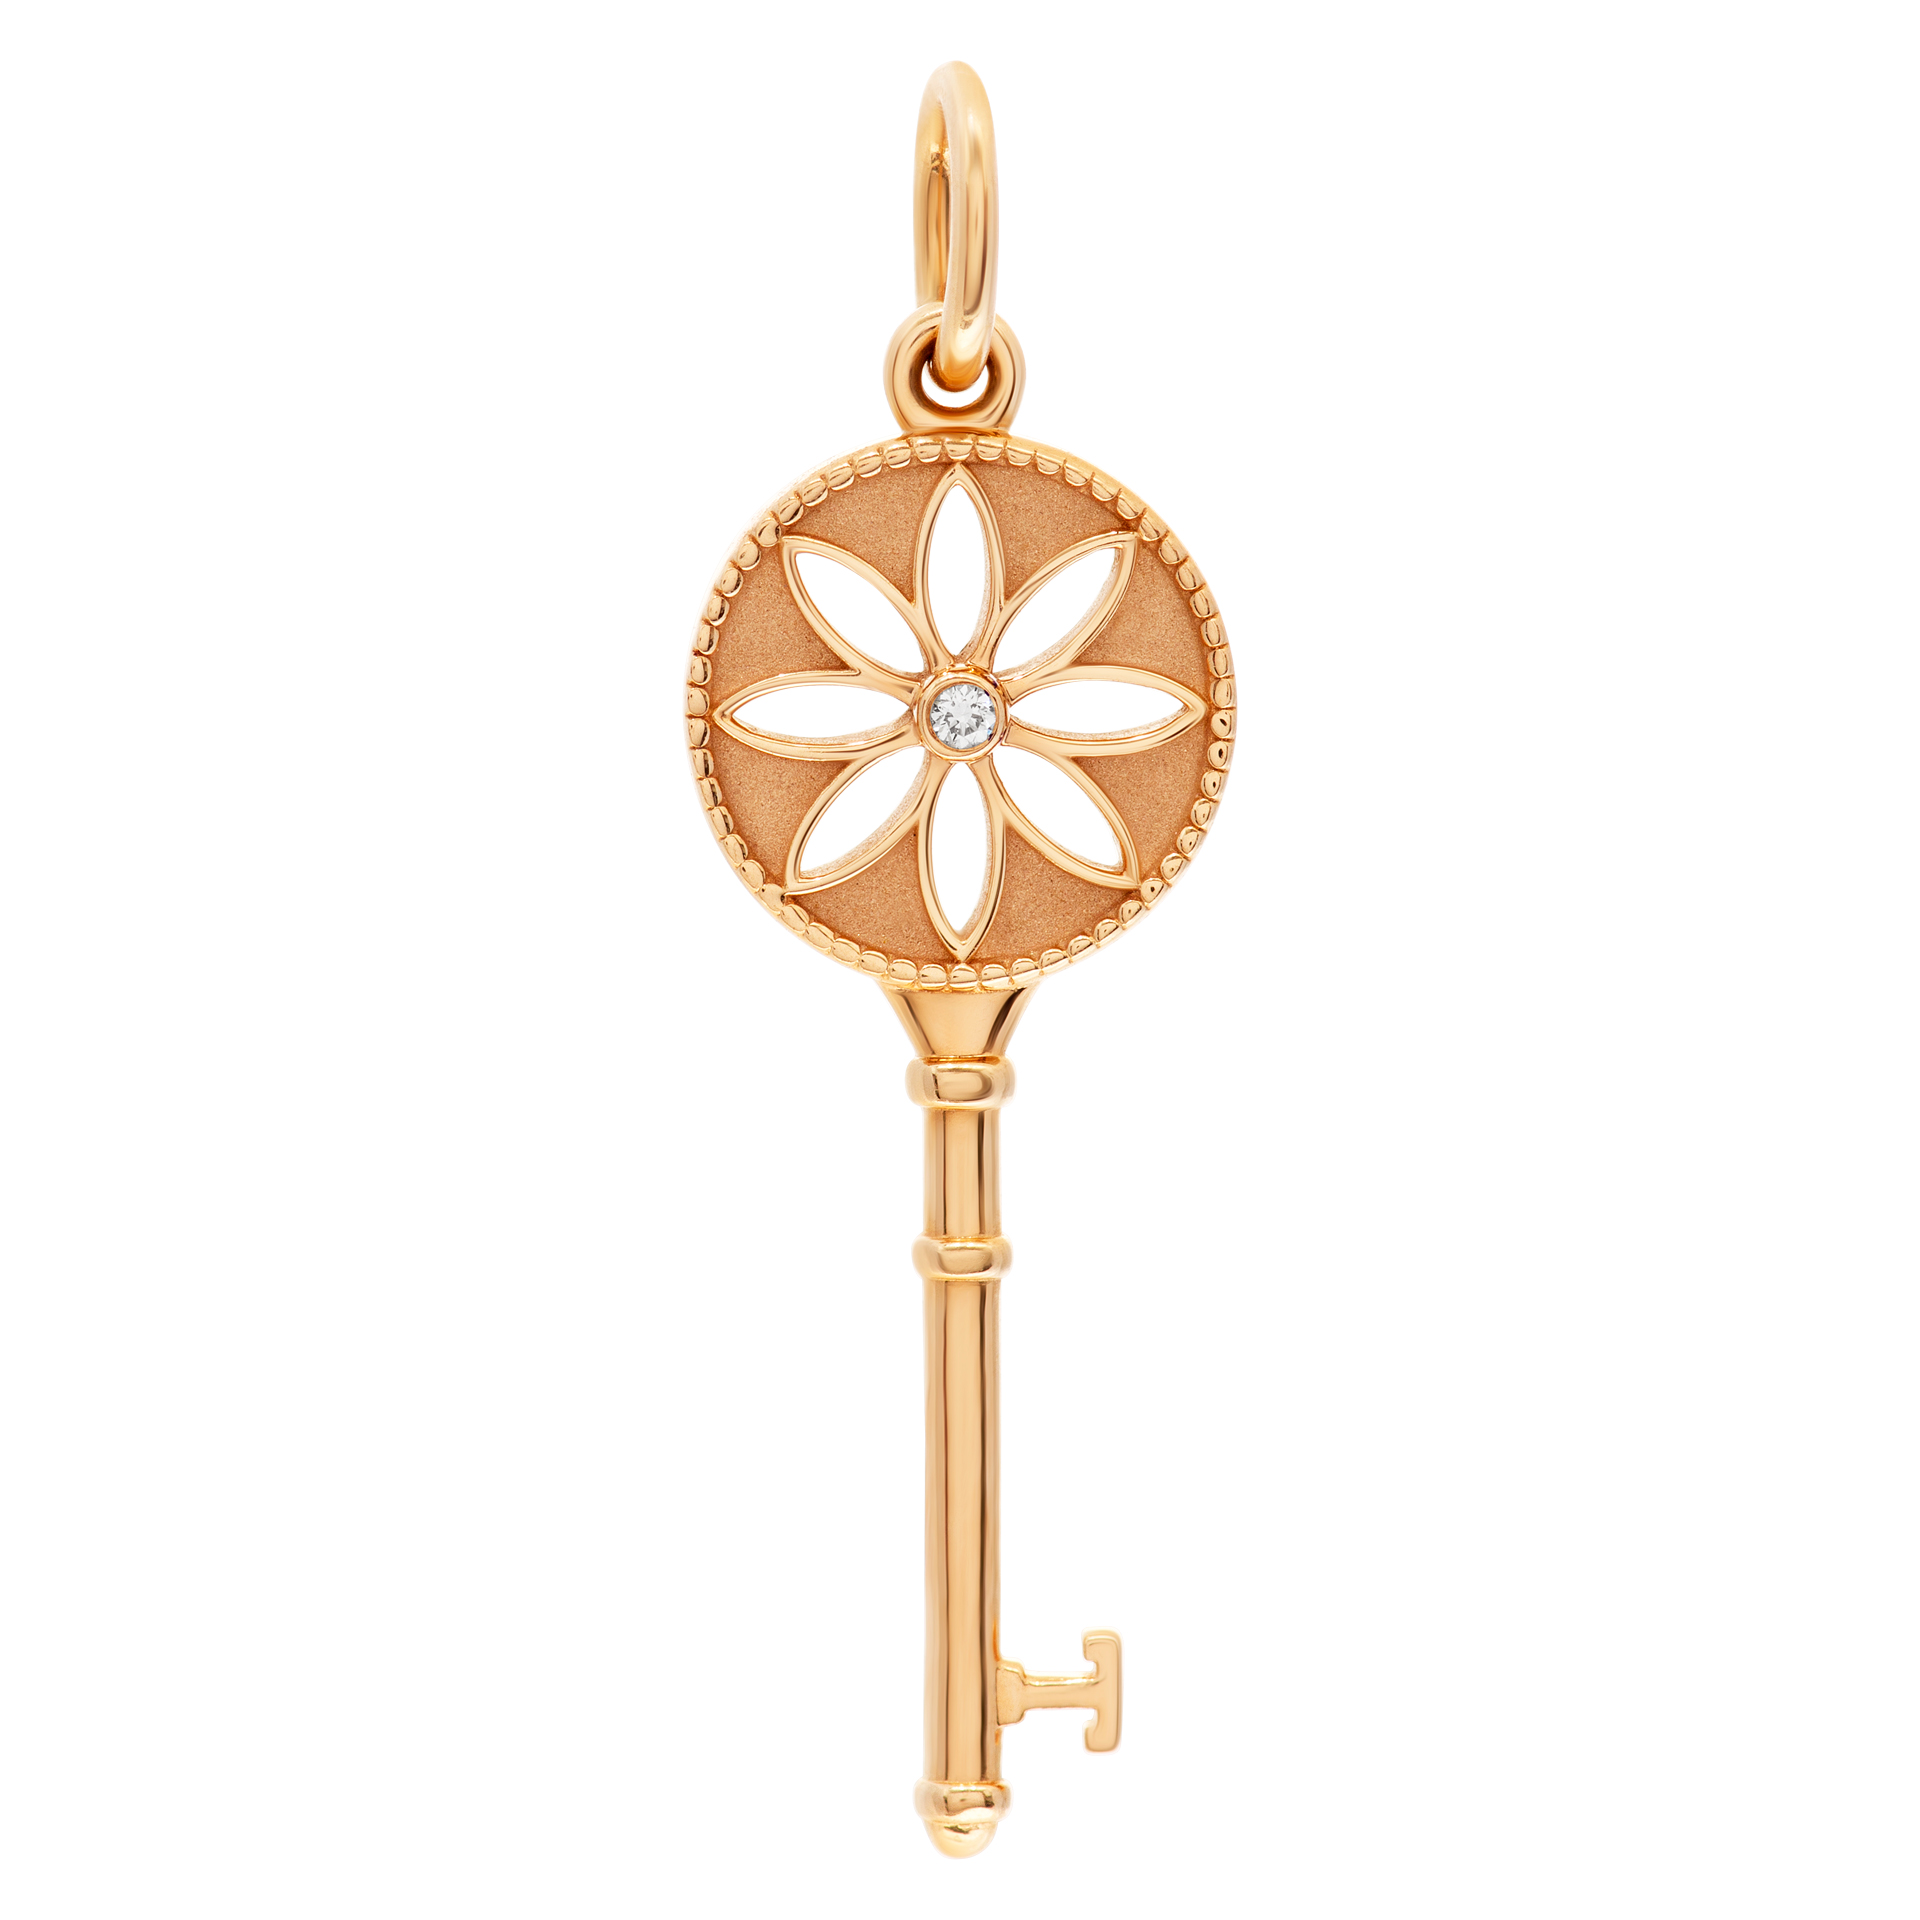 Tiffany & Co. Daisy Key charm in 18k rose gold image 1